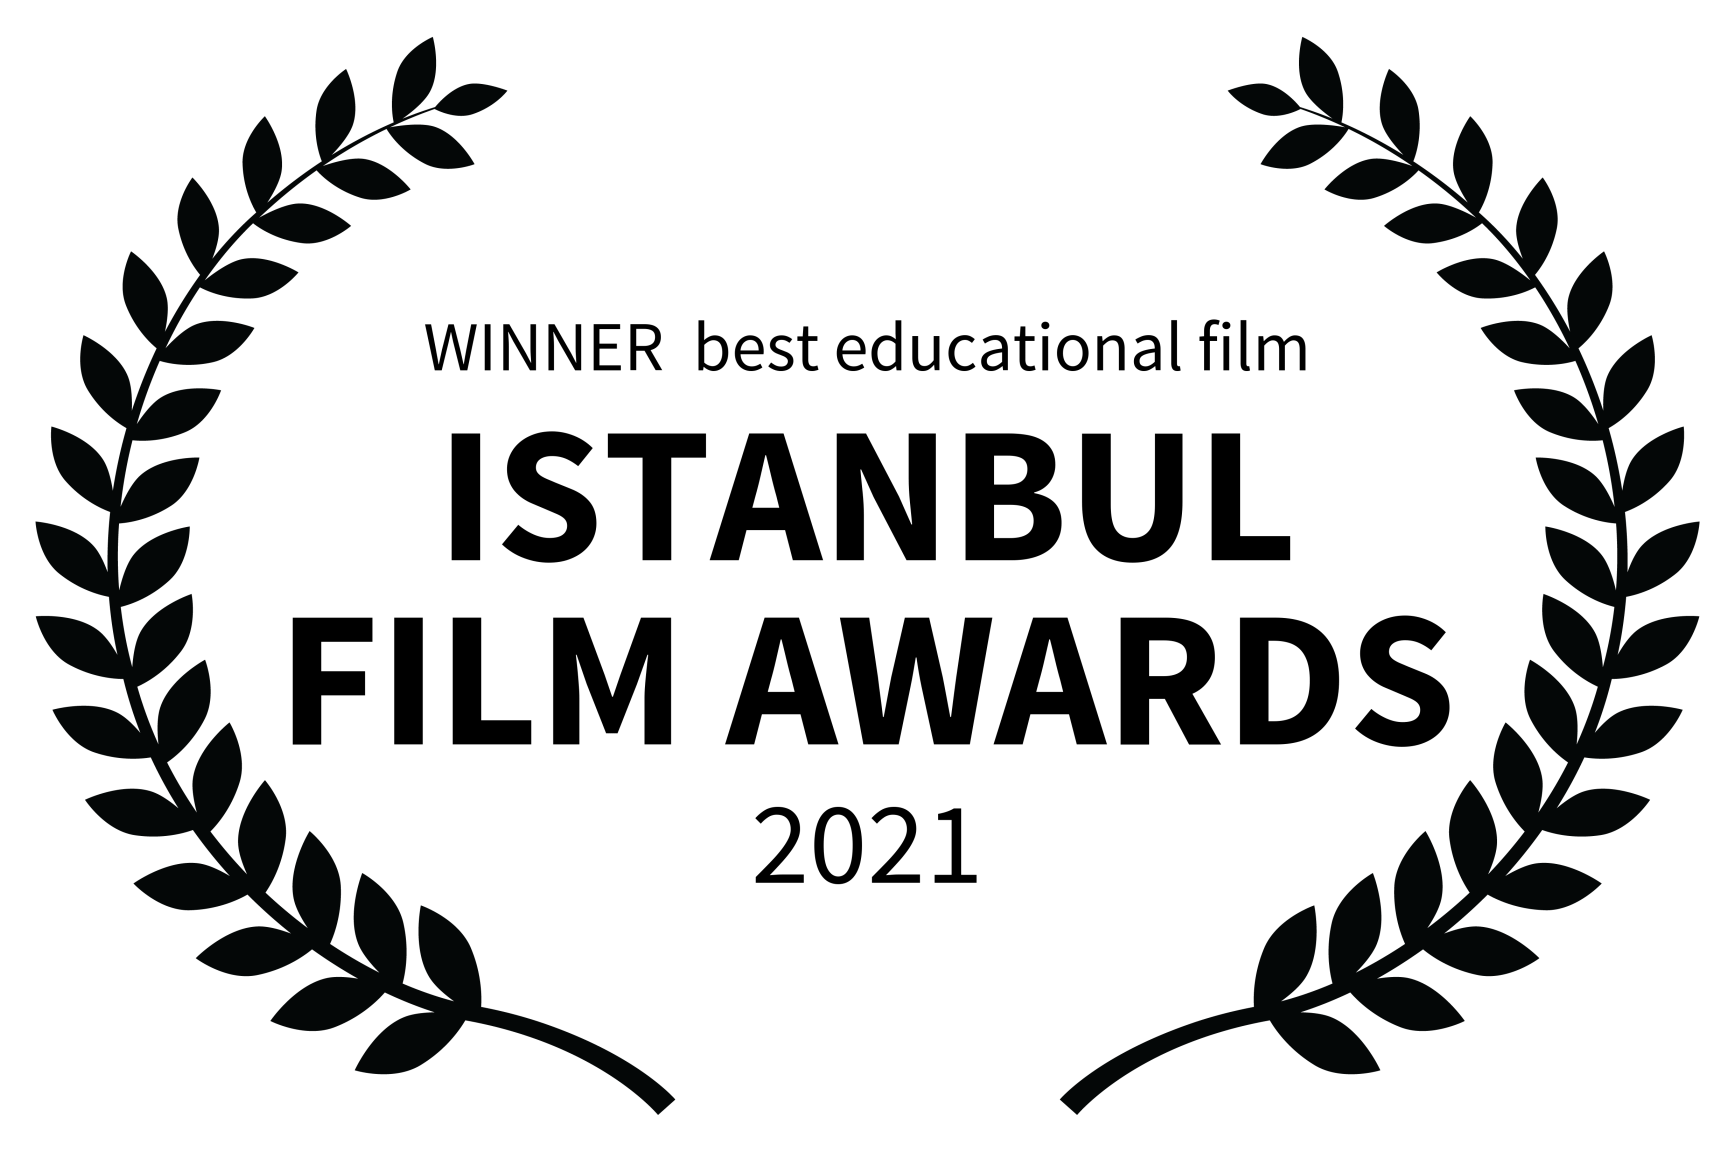 WINNER best educational film ISTANBUL FILM AWARDS 2021 1 1